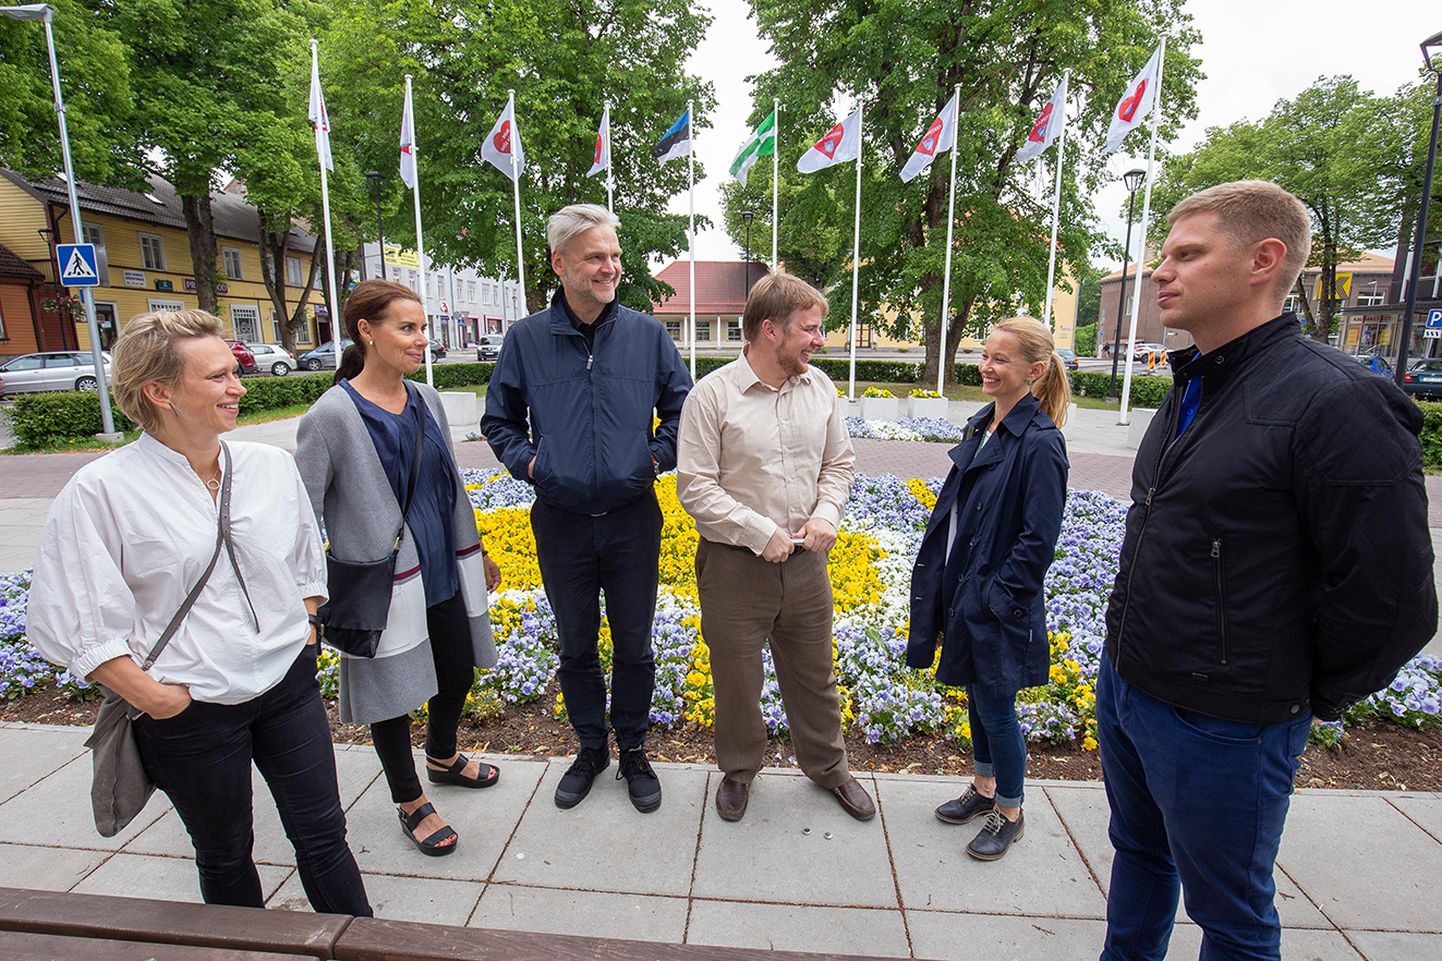 Ad Angelsi loovmeekond koosseisus (vasakult) Kärt Villmann, Kädi Kaasikmäe, Veiko Tammjärv ja Annika Avikson kirjeldavad Maiko Keskülale ja Priit Värgile oma pilti Paide linnast.